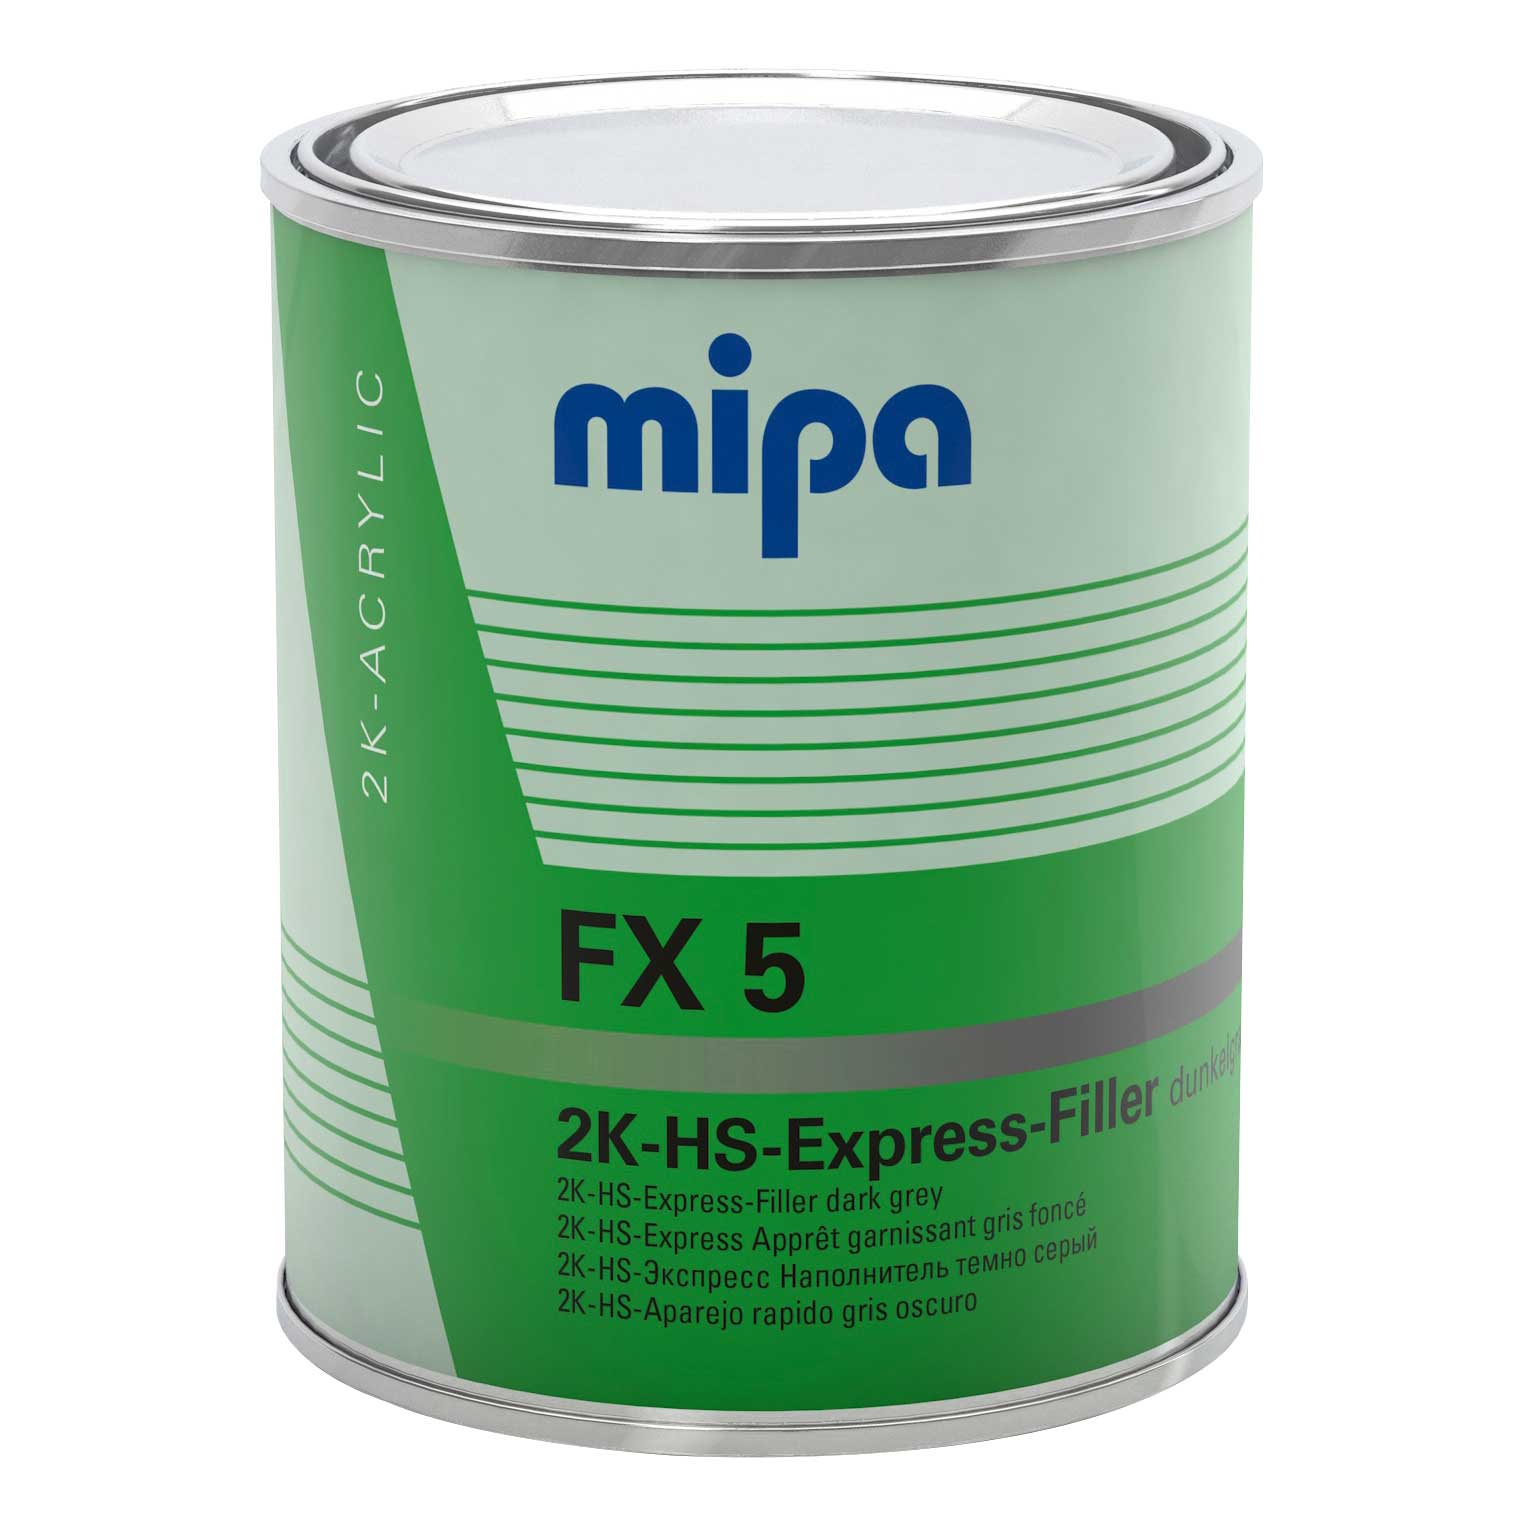 Mipa Füller 2K-HS-Express-Filler FX 5